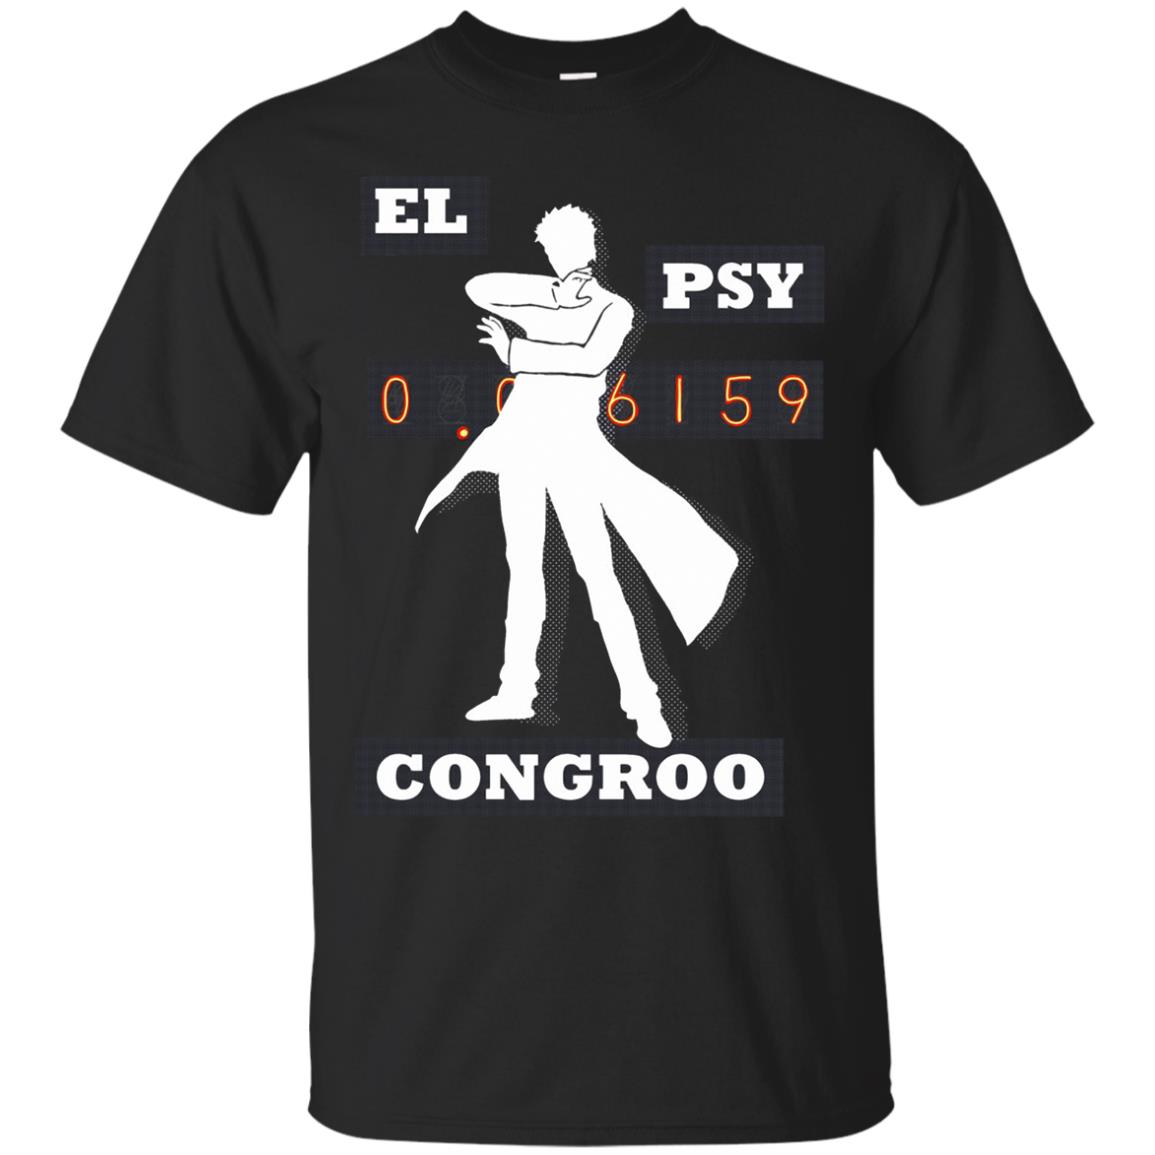 el psy congroo shirt - black